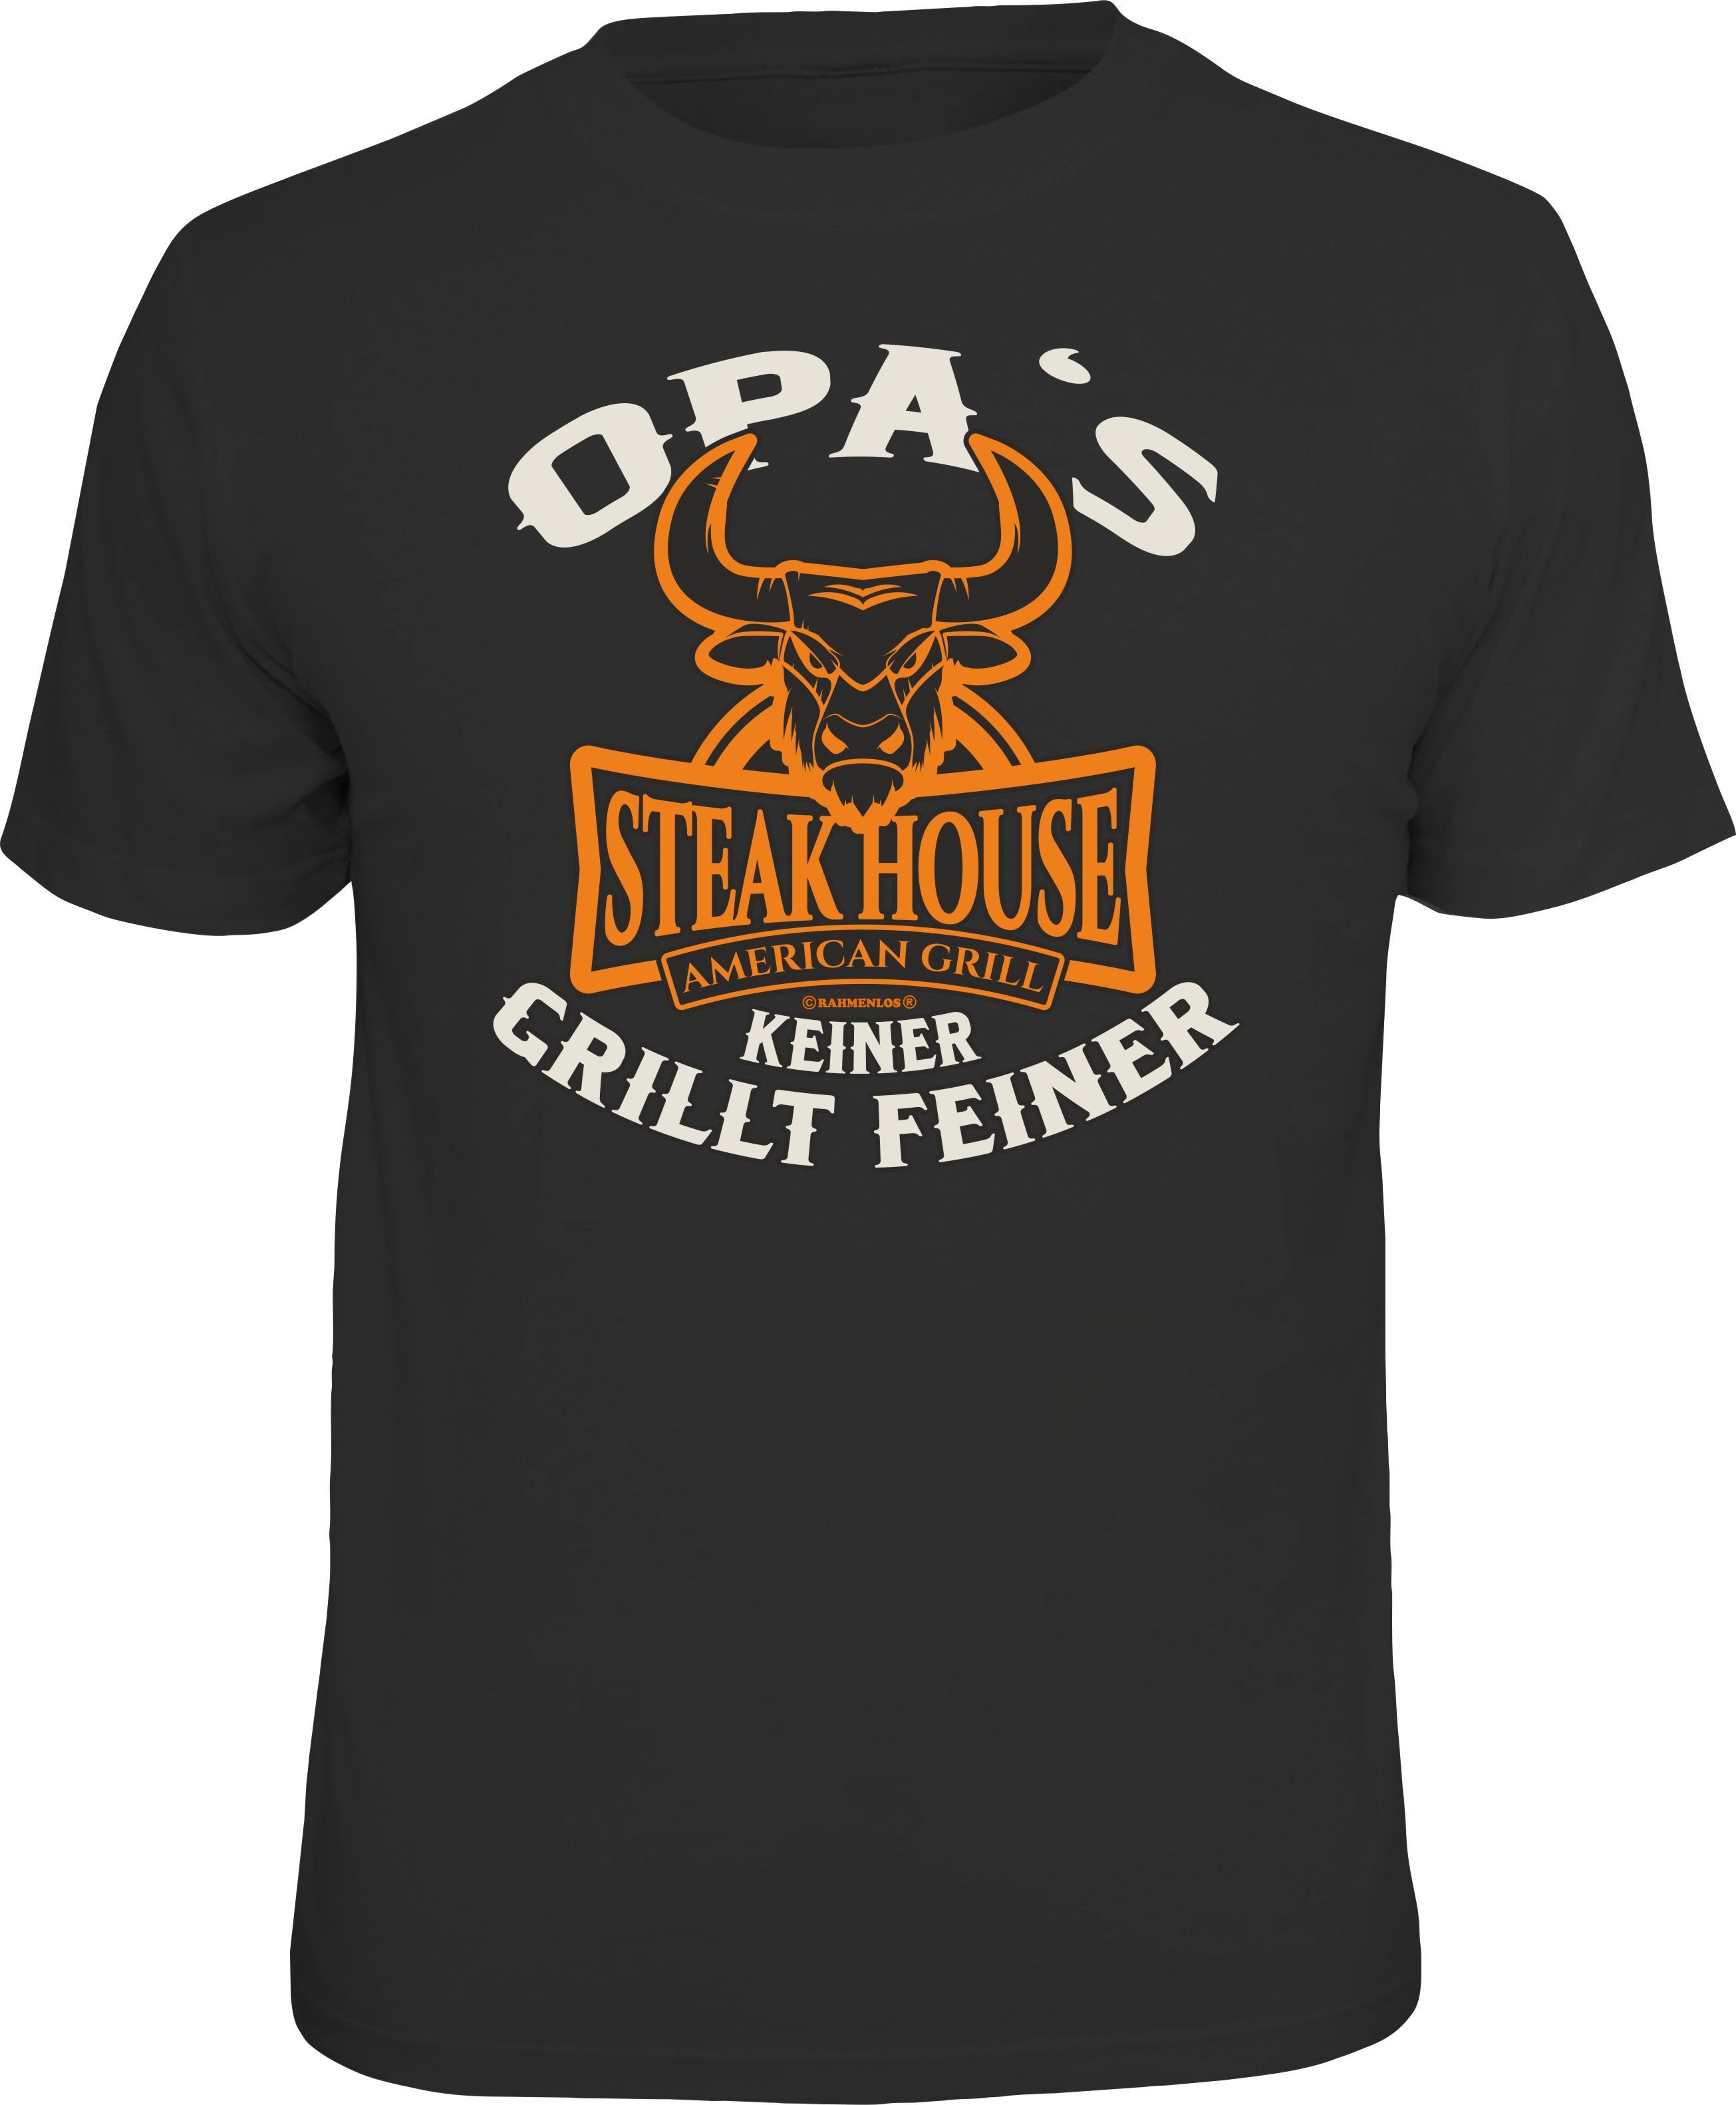 Rahmenlos T-Shirt als Geschenk für den Großvater am Grill: Opa's Steakhouse